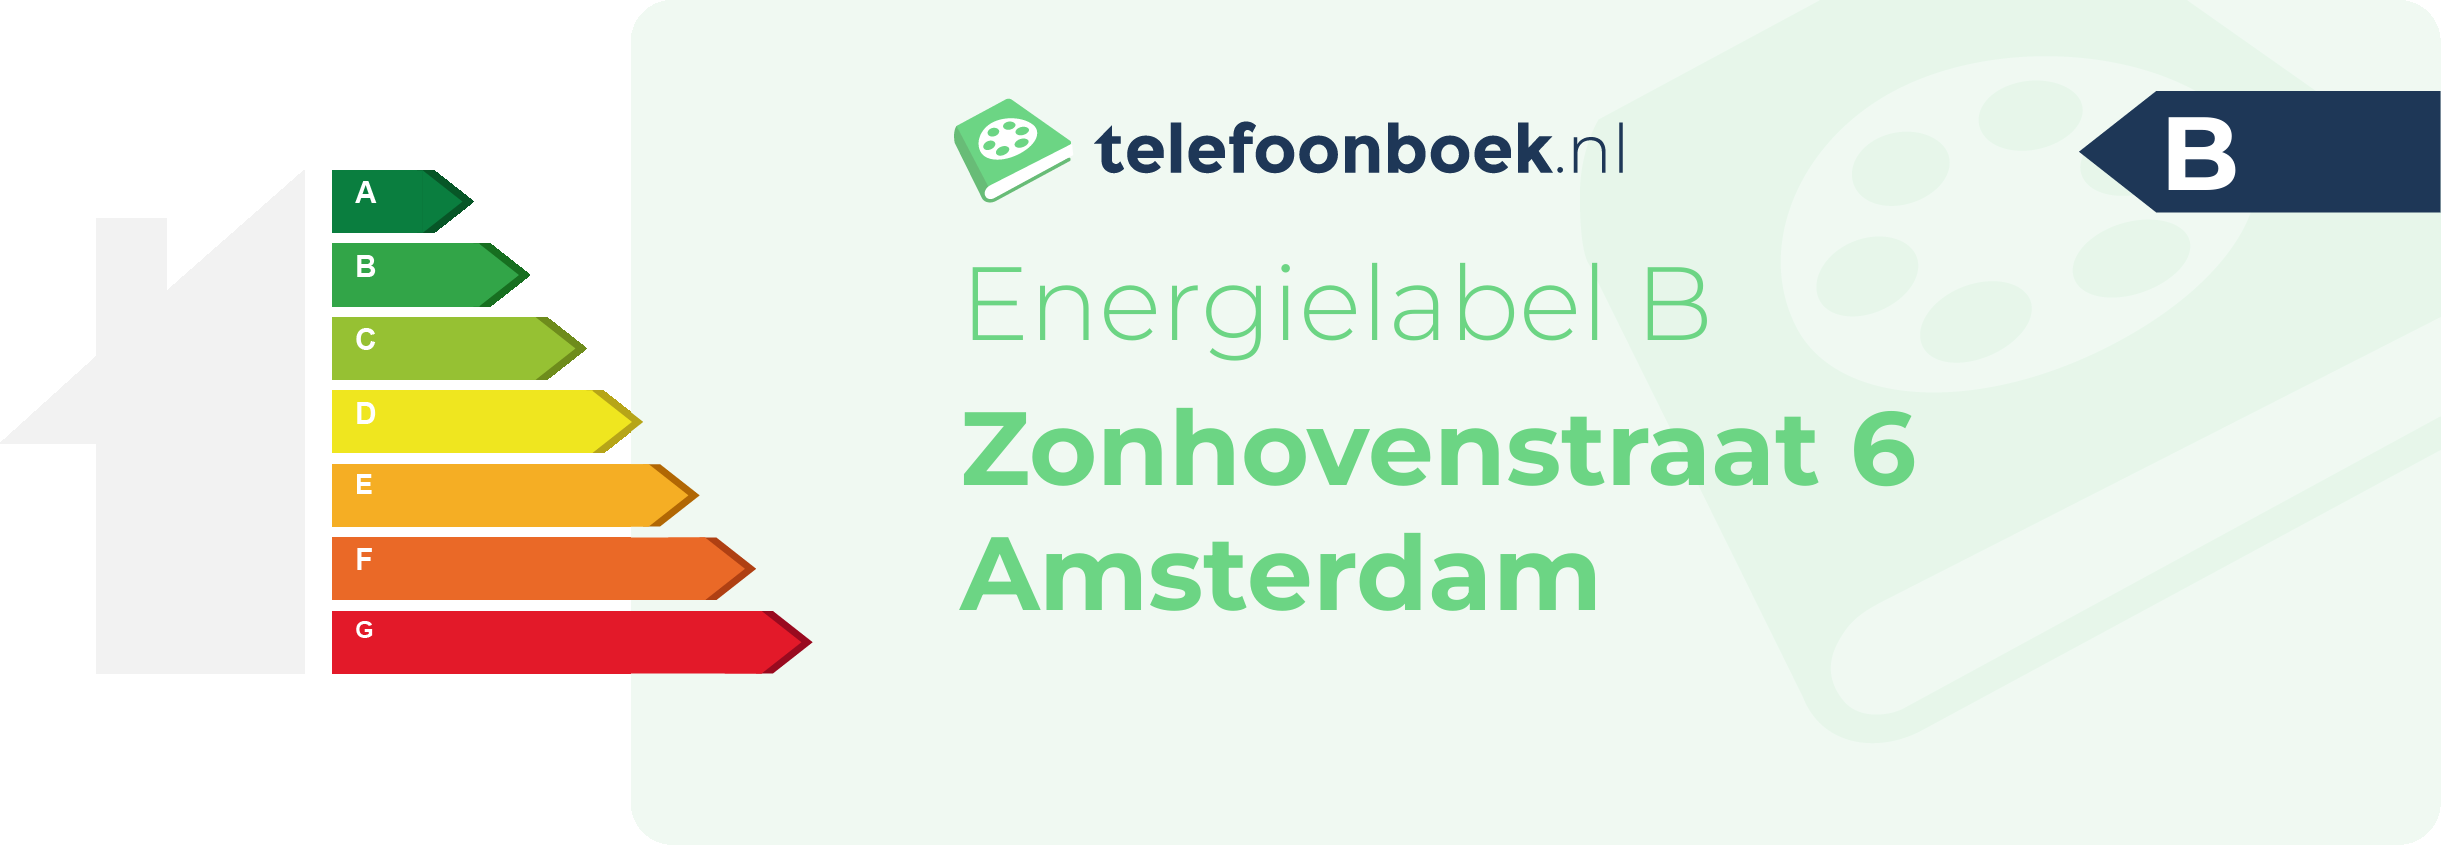 Energielabel Zonhovenstraat 6 Amsterdam